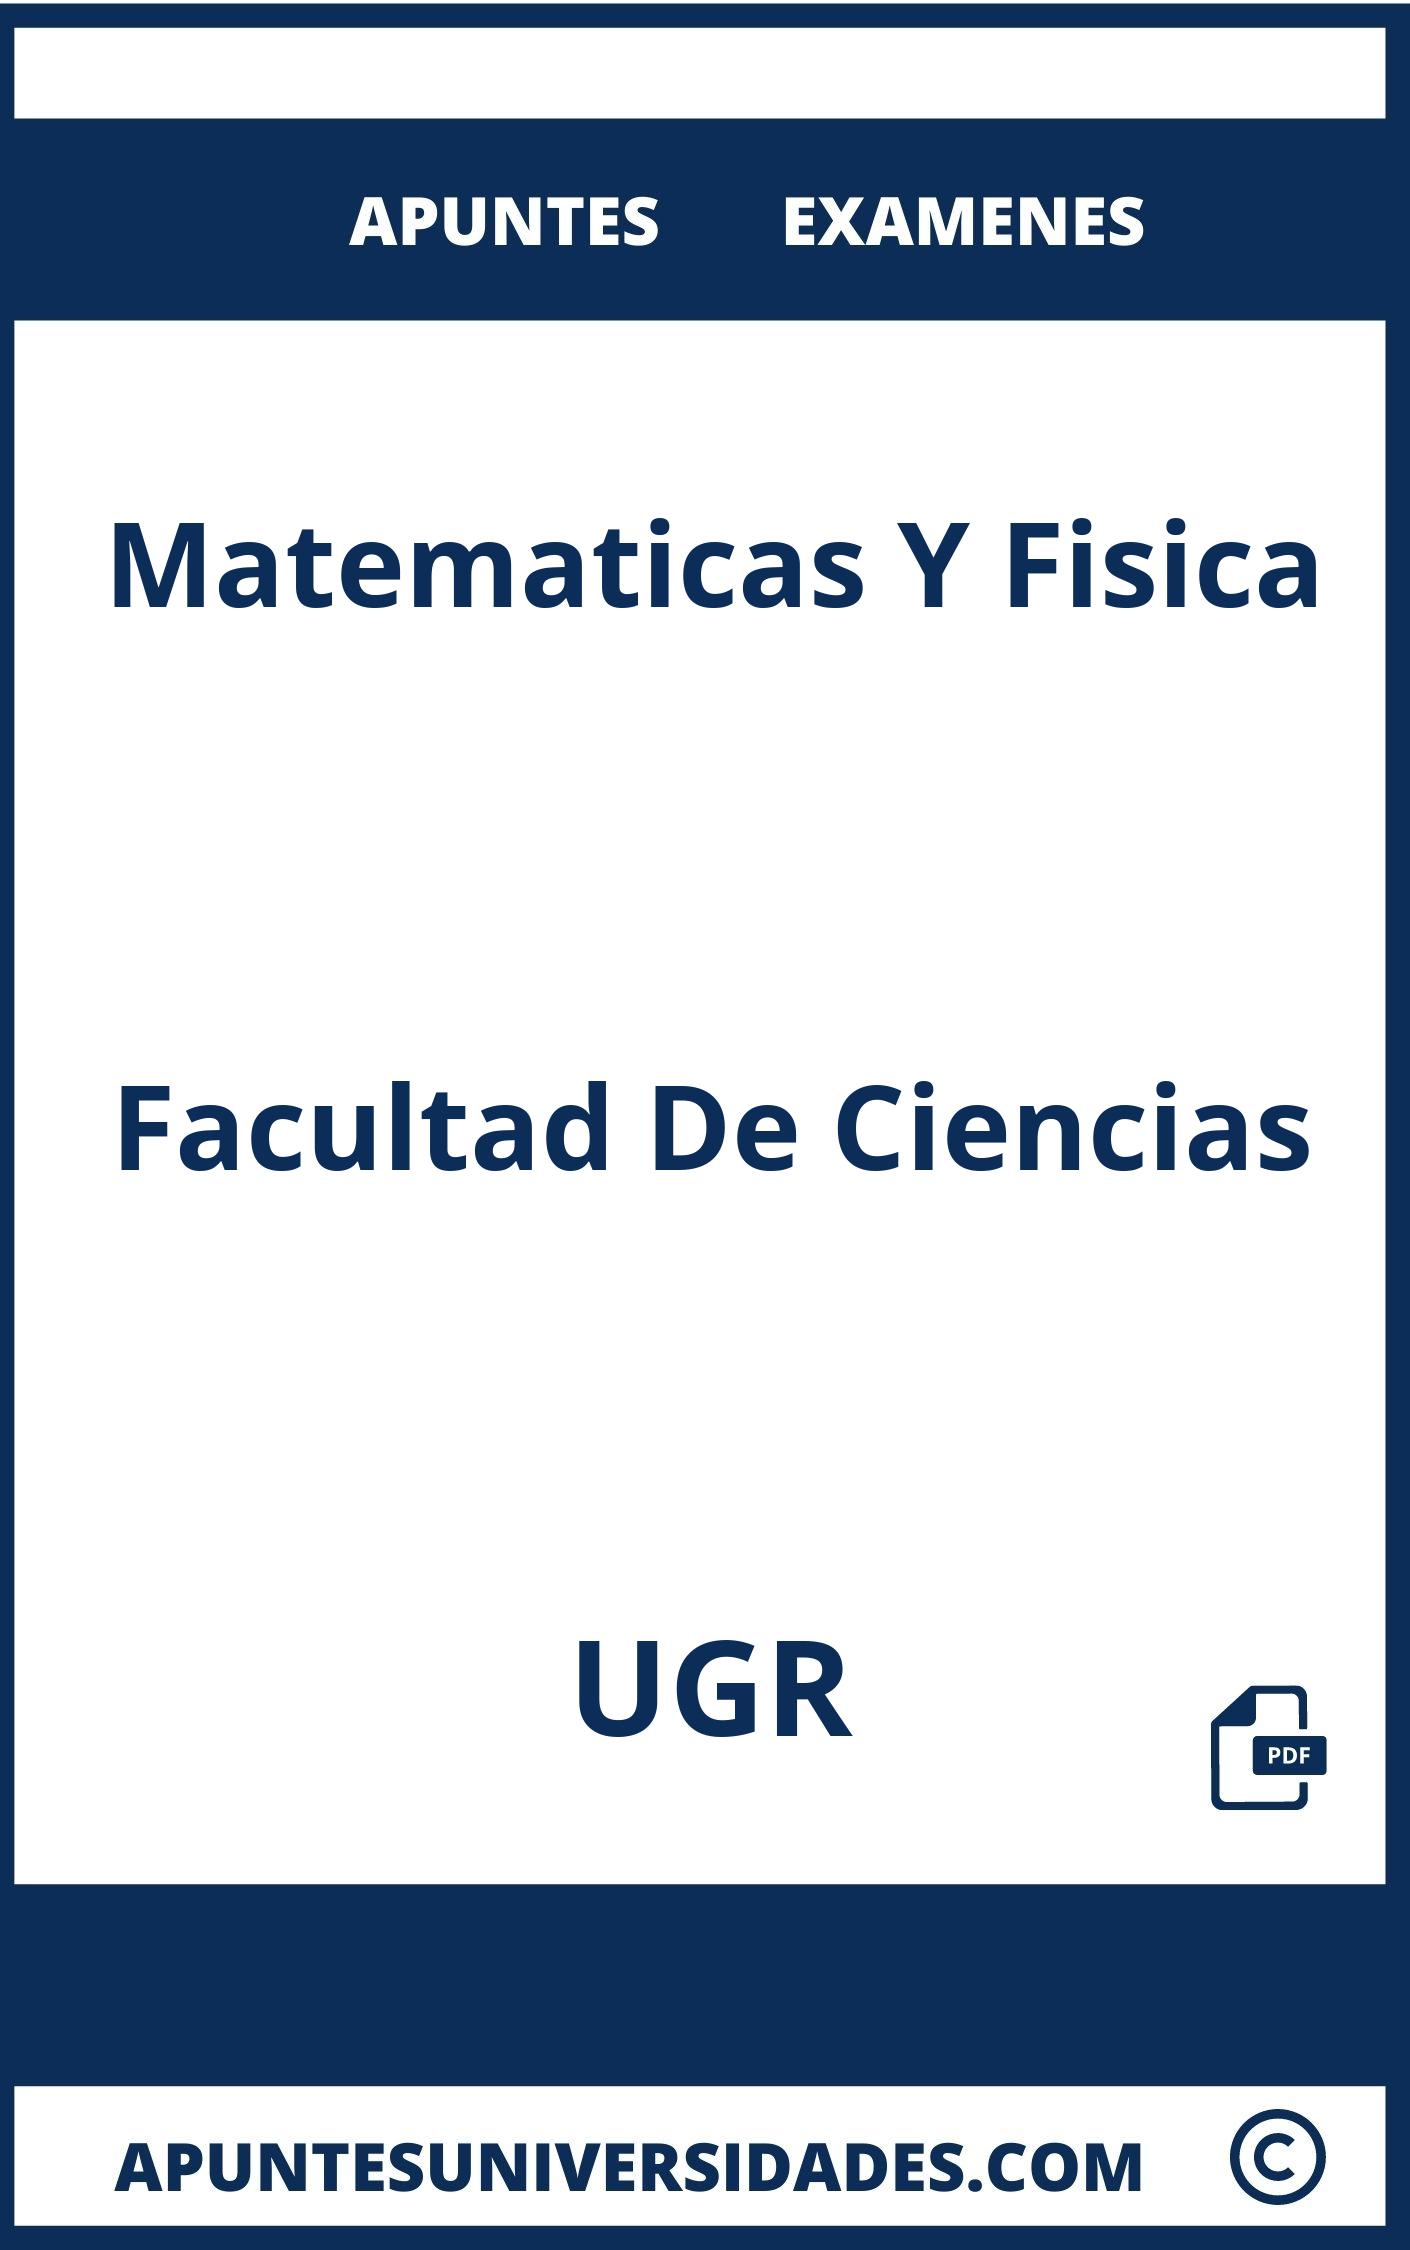 Apuntes Matematicas Y Fisica UGR y Examenes